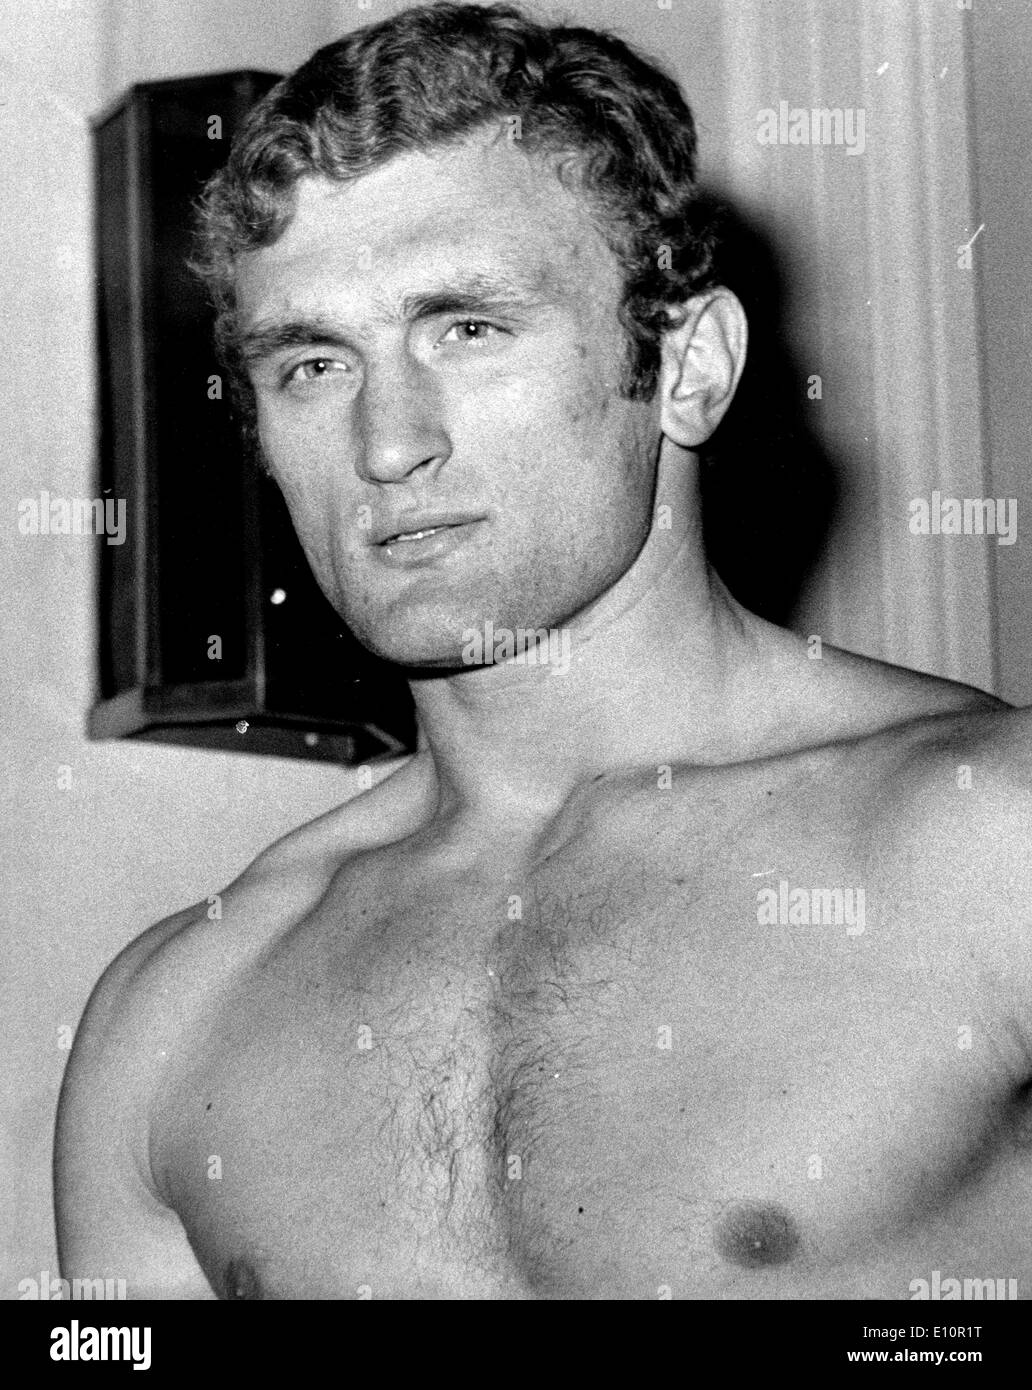 JOE BUGNER pesado británico a pesar de su juego contra American heavyweight Charlie educado en el Albert Hall en el REINO UNIDO Foto de stock